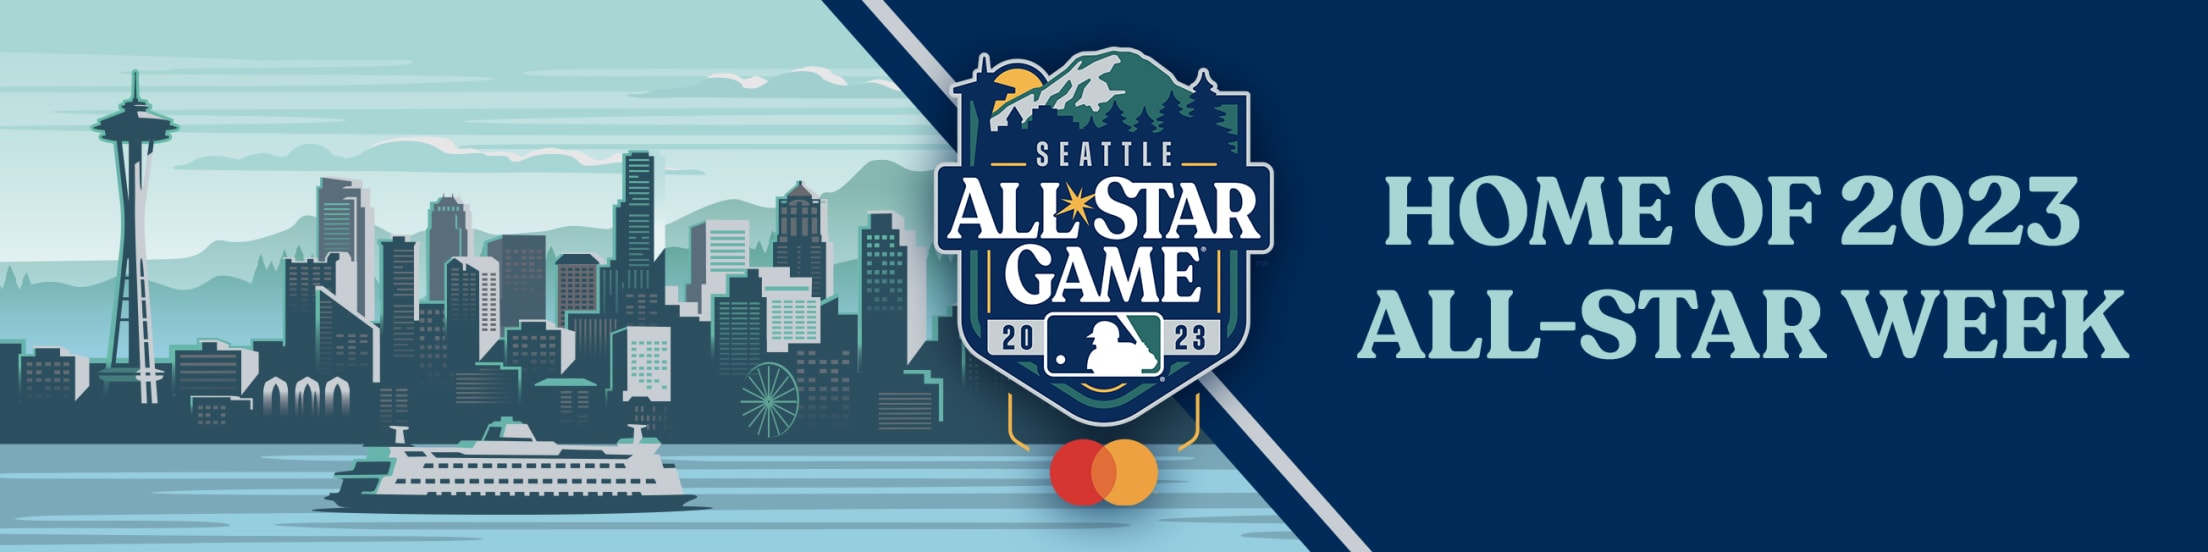 Seattle Mariners to host 2023 Major League Baseball AllStar Game   SportsTravel